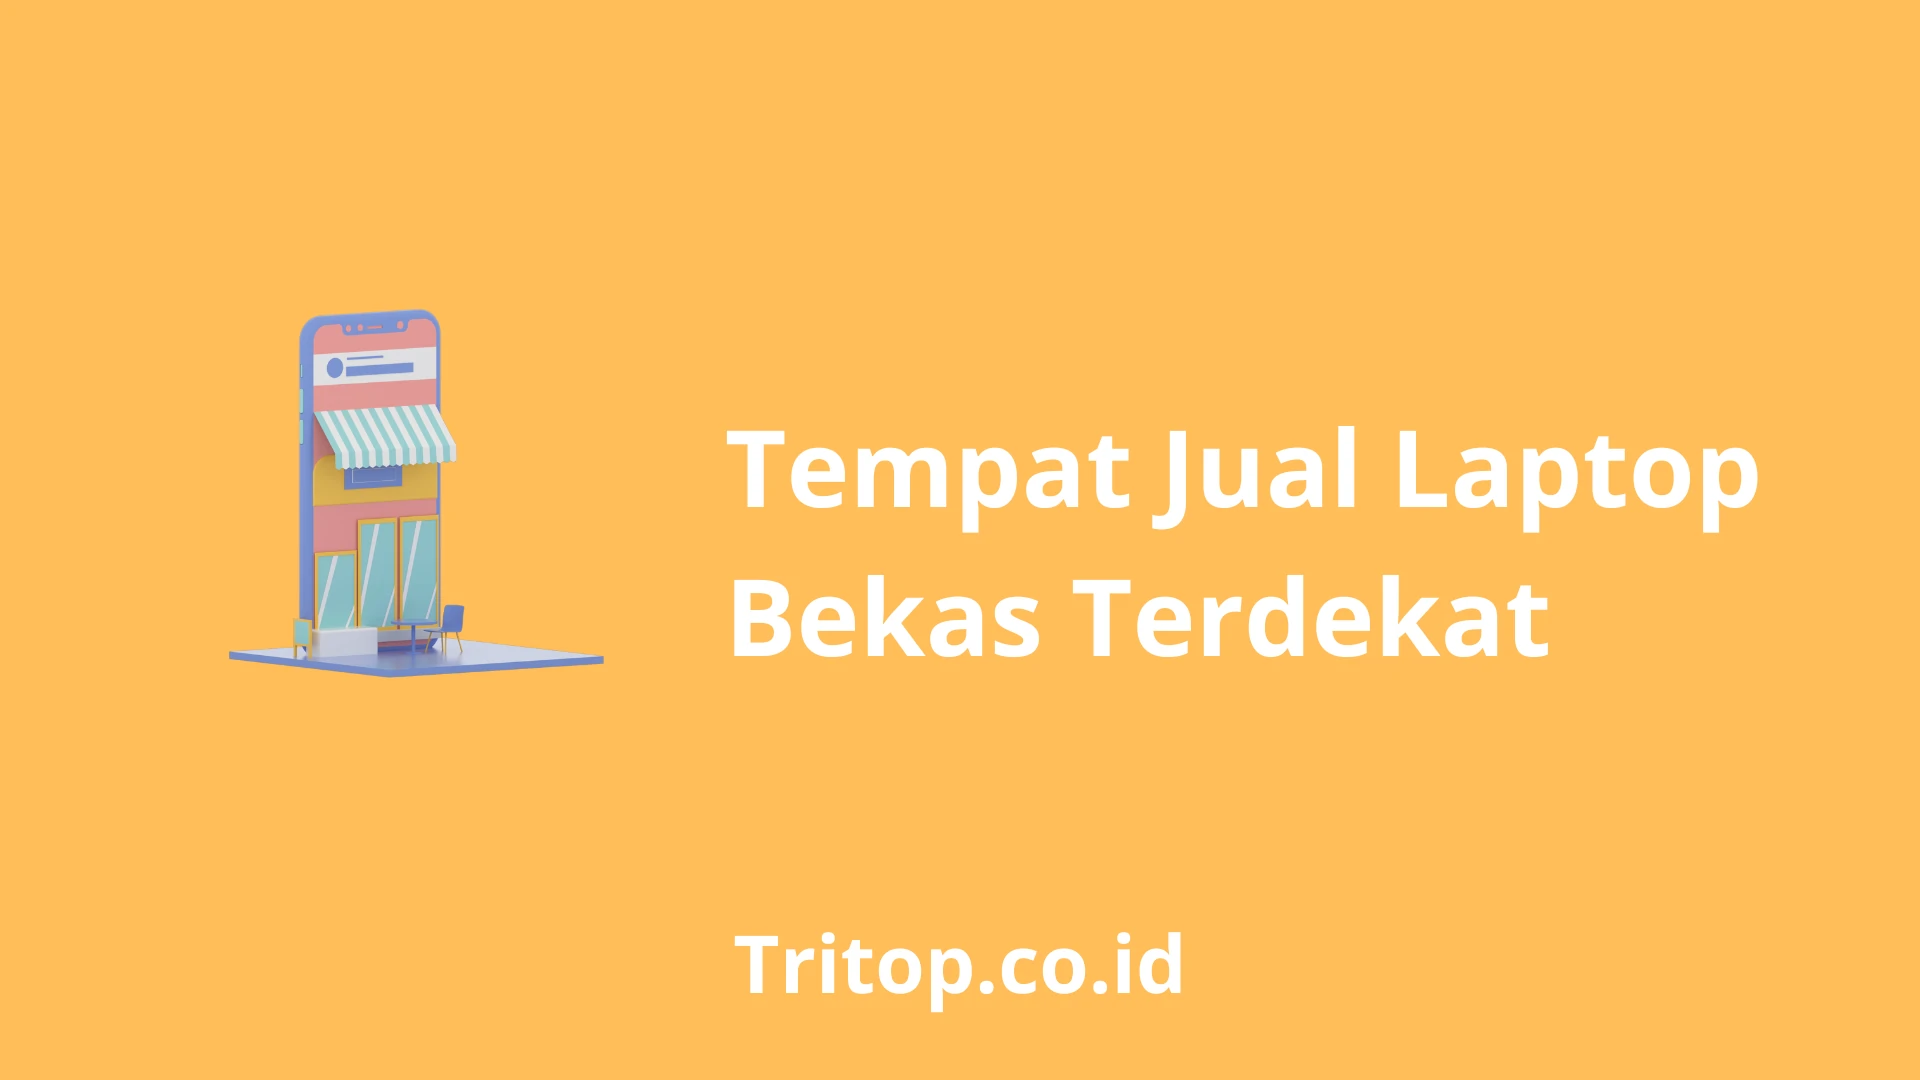 Tempat Jual Laptop Bekas Terdekat tritop.co.id